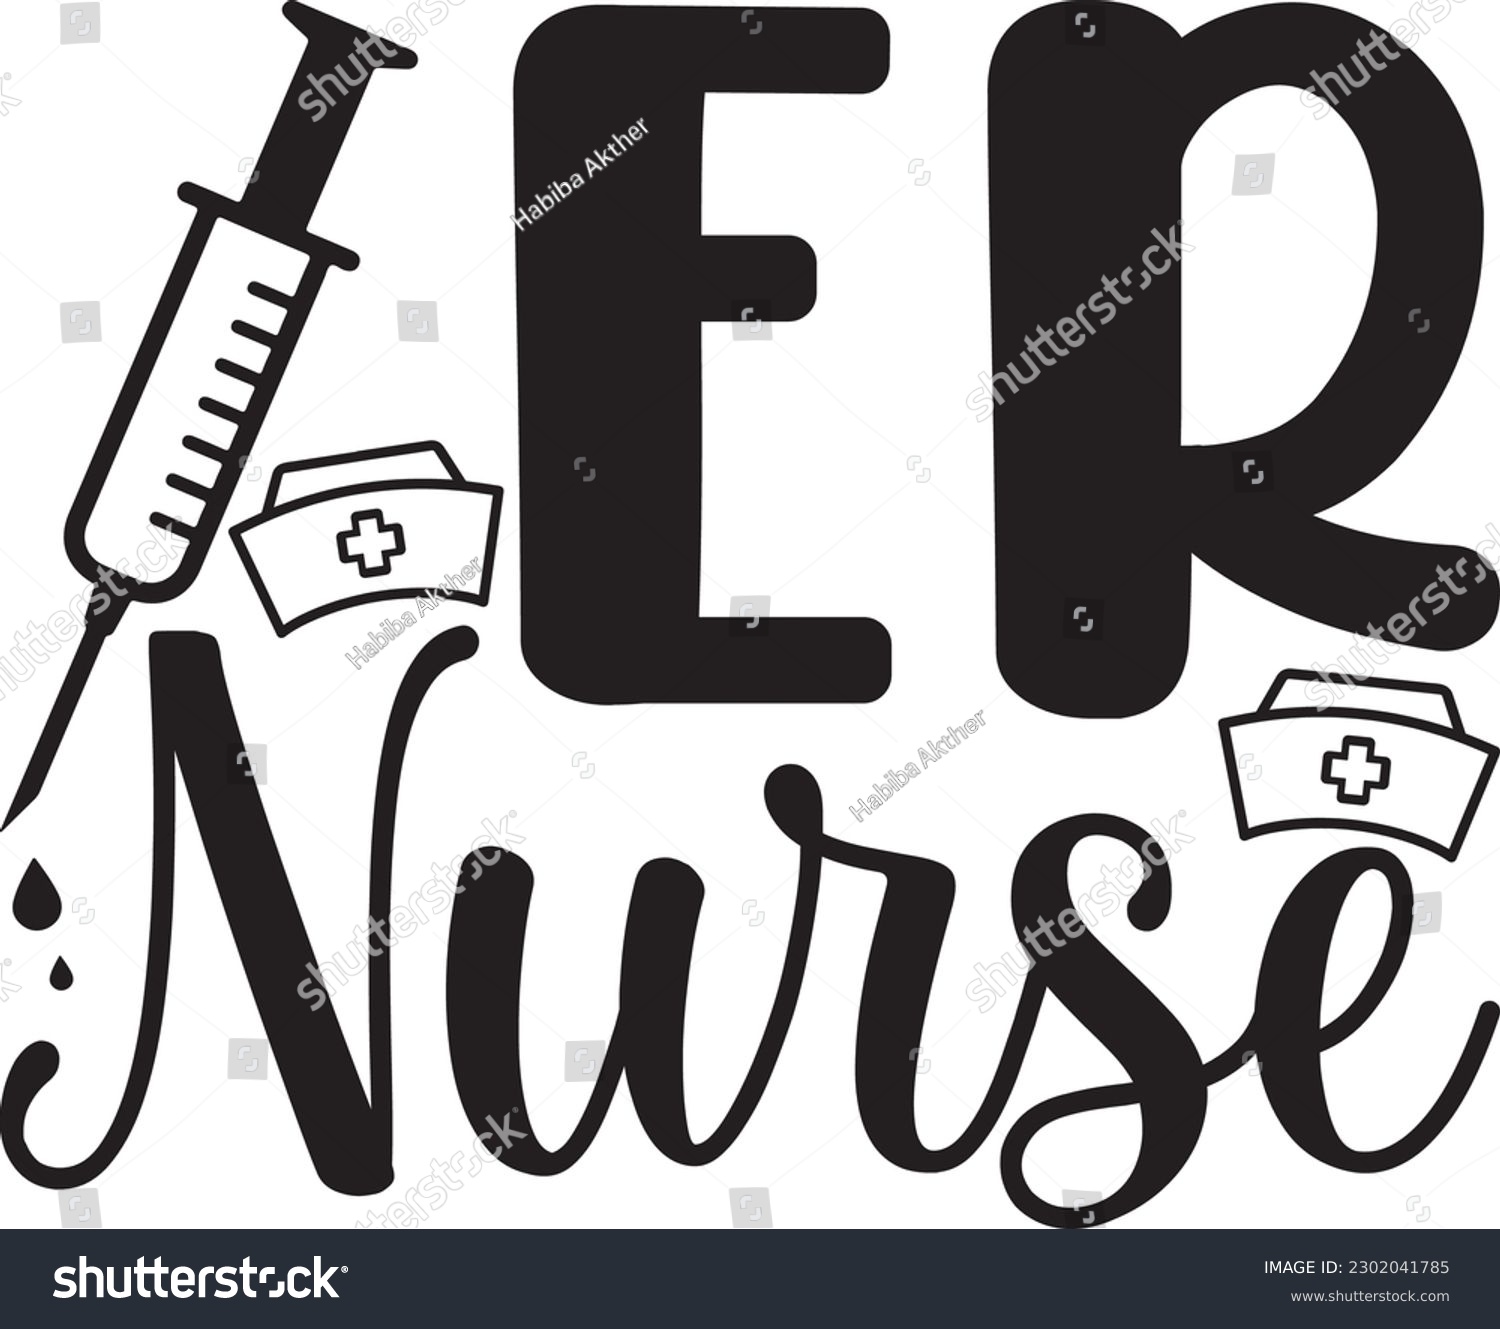 SVG of ER nurse,Doctor's Day,#1 doctor,Doctor Svg,silhouette,Vector,Nurse SVG,Essential Worker,Hospital,Heart Stethoscope SVG,dentist svg,monogram svg,medical,Eps,uniform svg,Doctor Jacket svg,Doctor mug, svg